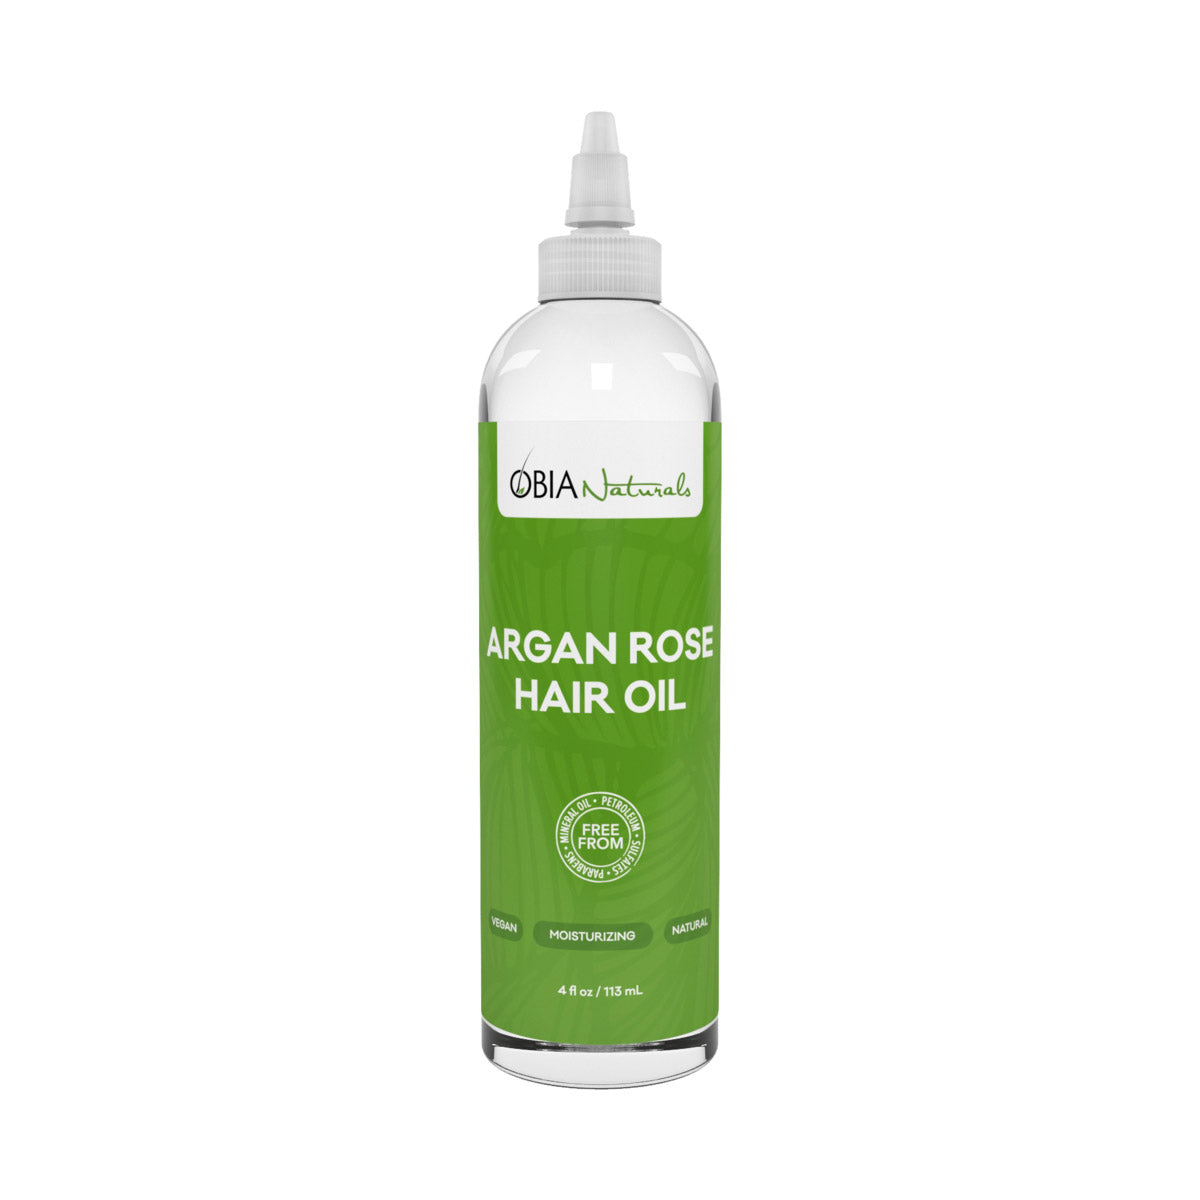 Argan Rose Hair Oil est un somptueux mélange d'huiles d'argan, de rose et de coco pour nourrir cheveux et cuir chevelu et favoriser ainsi la croissance capillaire.